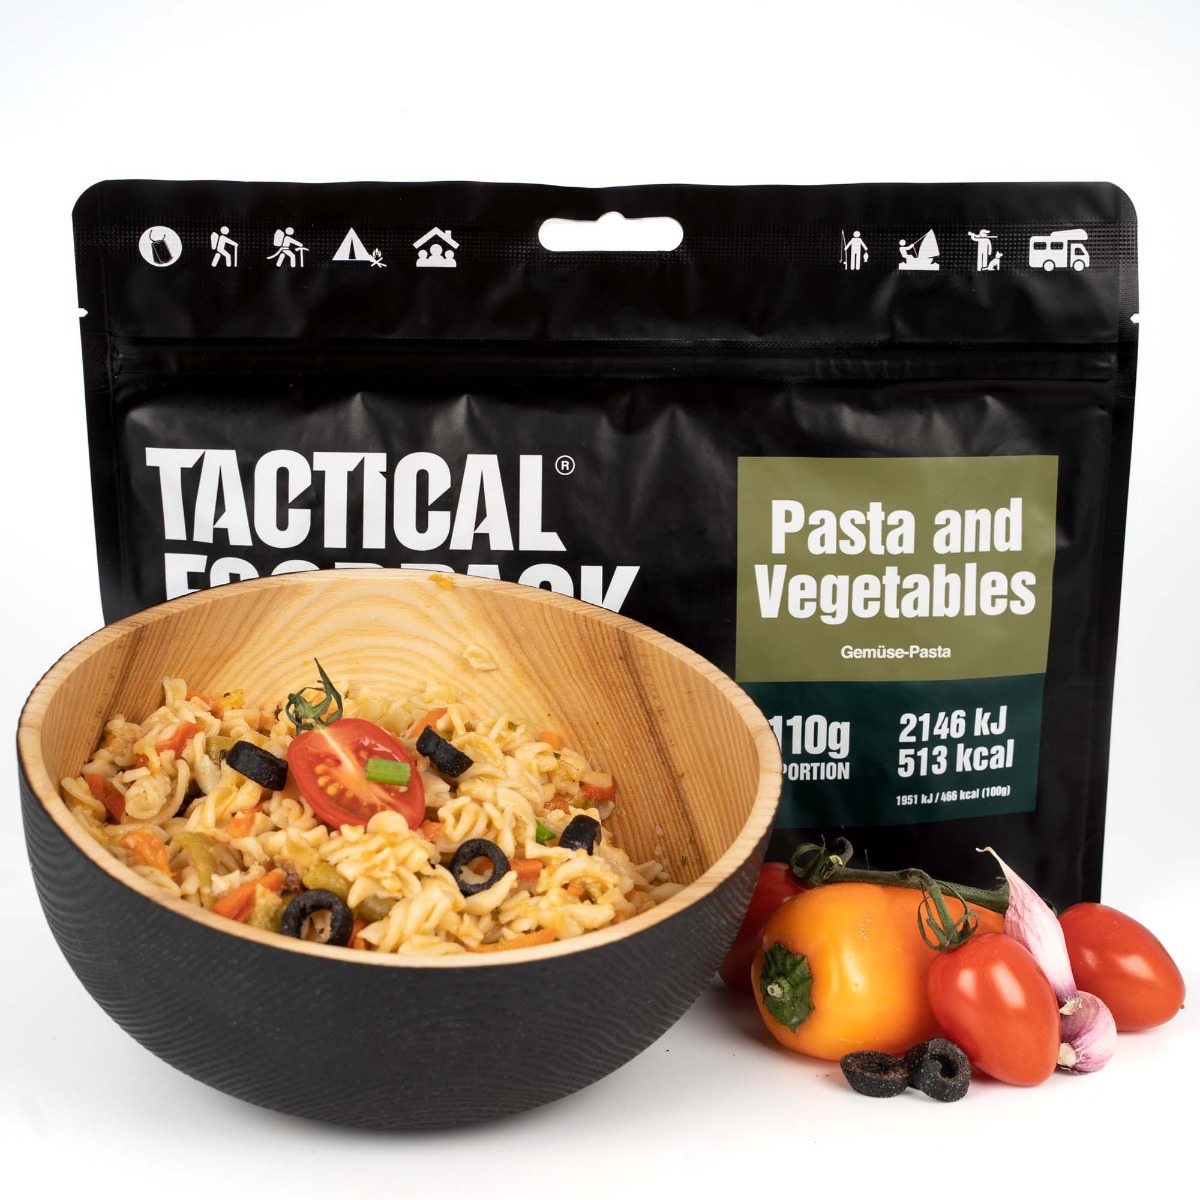 Kupite liofilizirano hrano Tactical Foodpack - testenine z zelenjavo. Idealen obrok za preživetje na prostem. Dolga obstojnost, visoka prehranska vrednost.